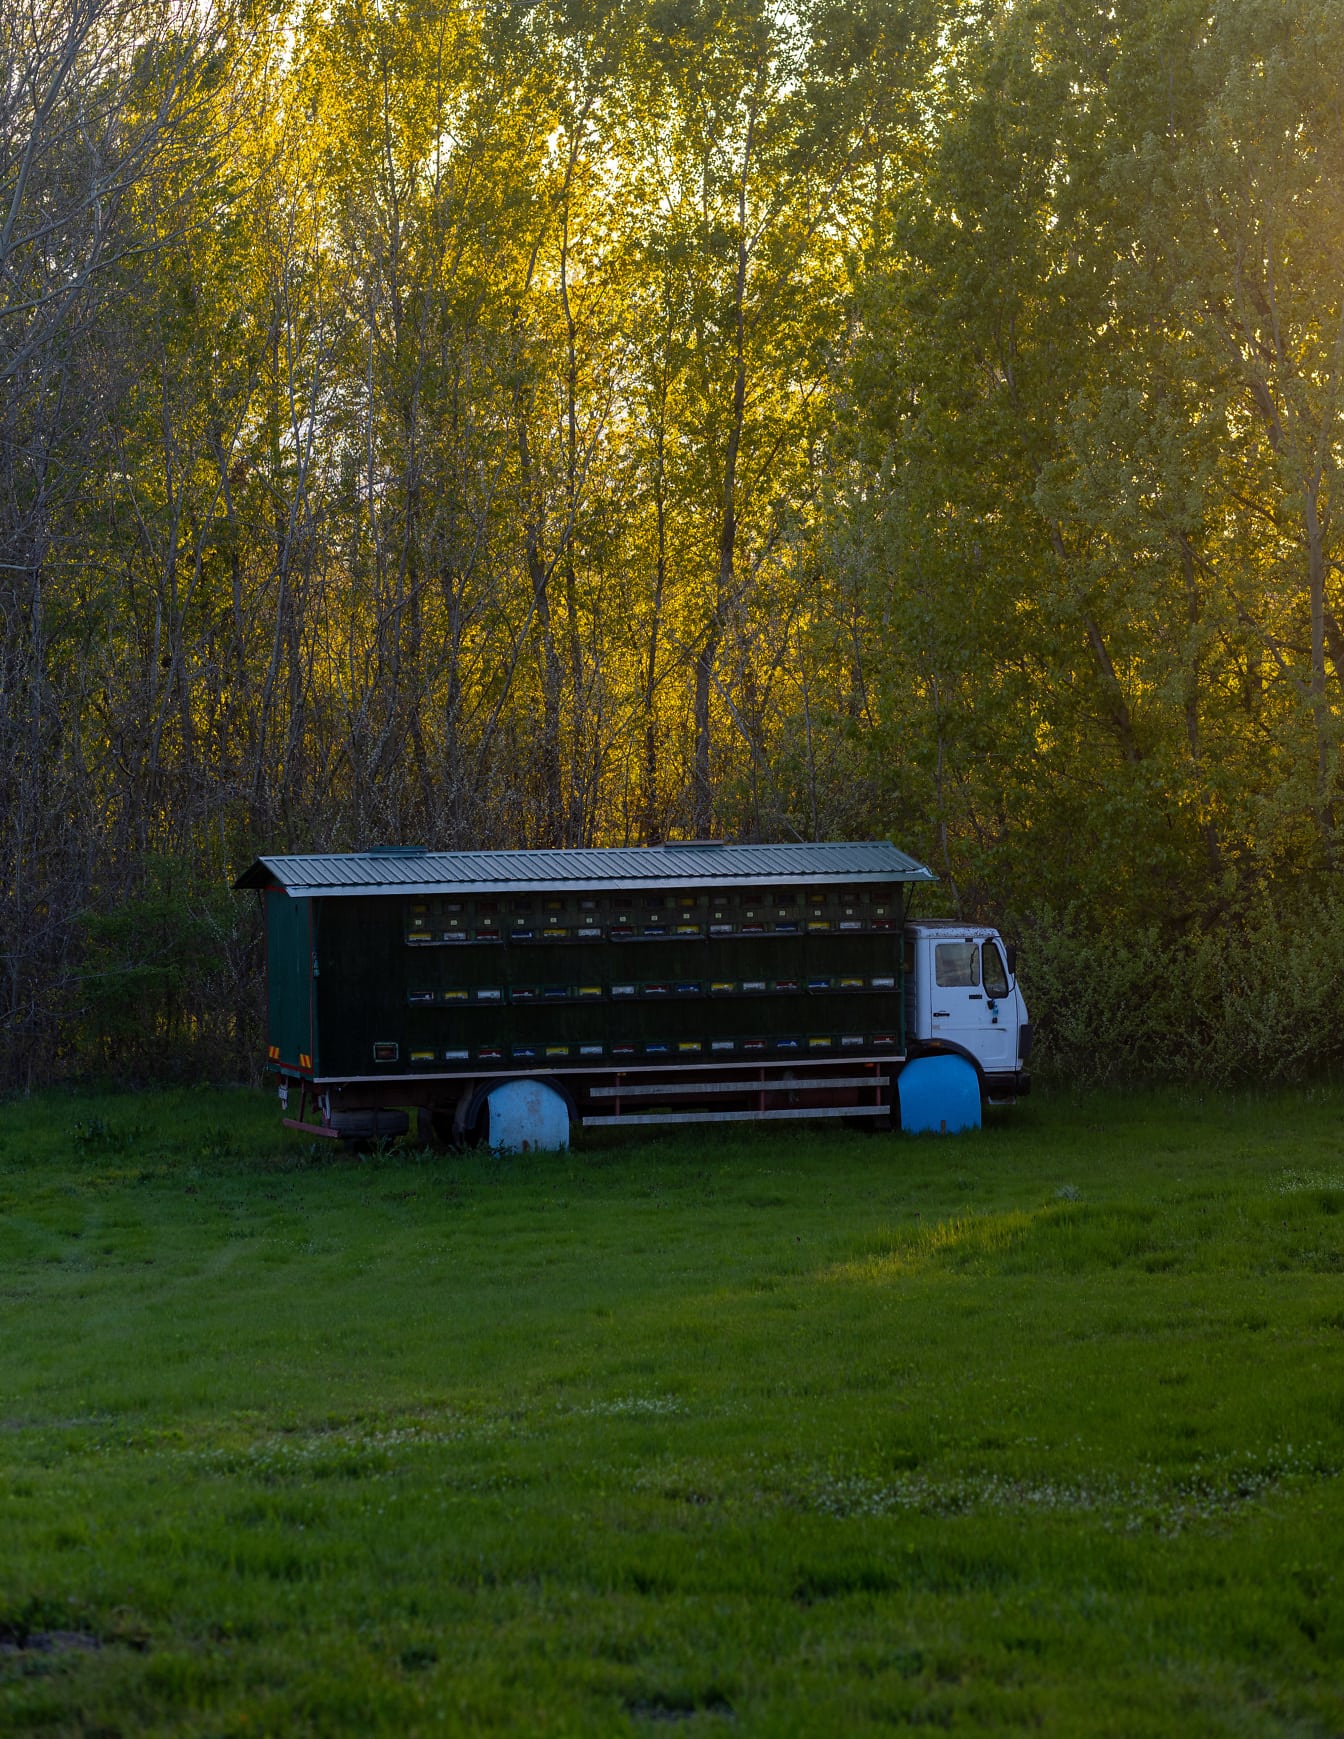 Грузовик «Улей», припаркованный на травянистом лугу